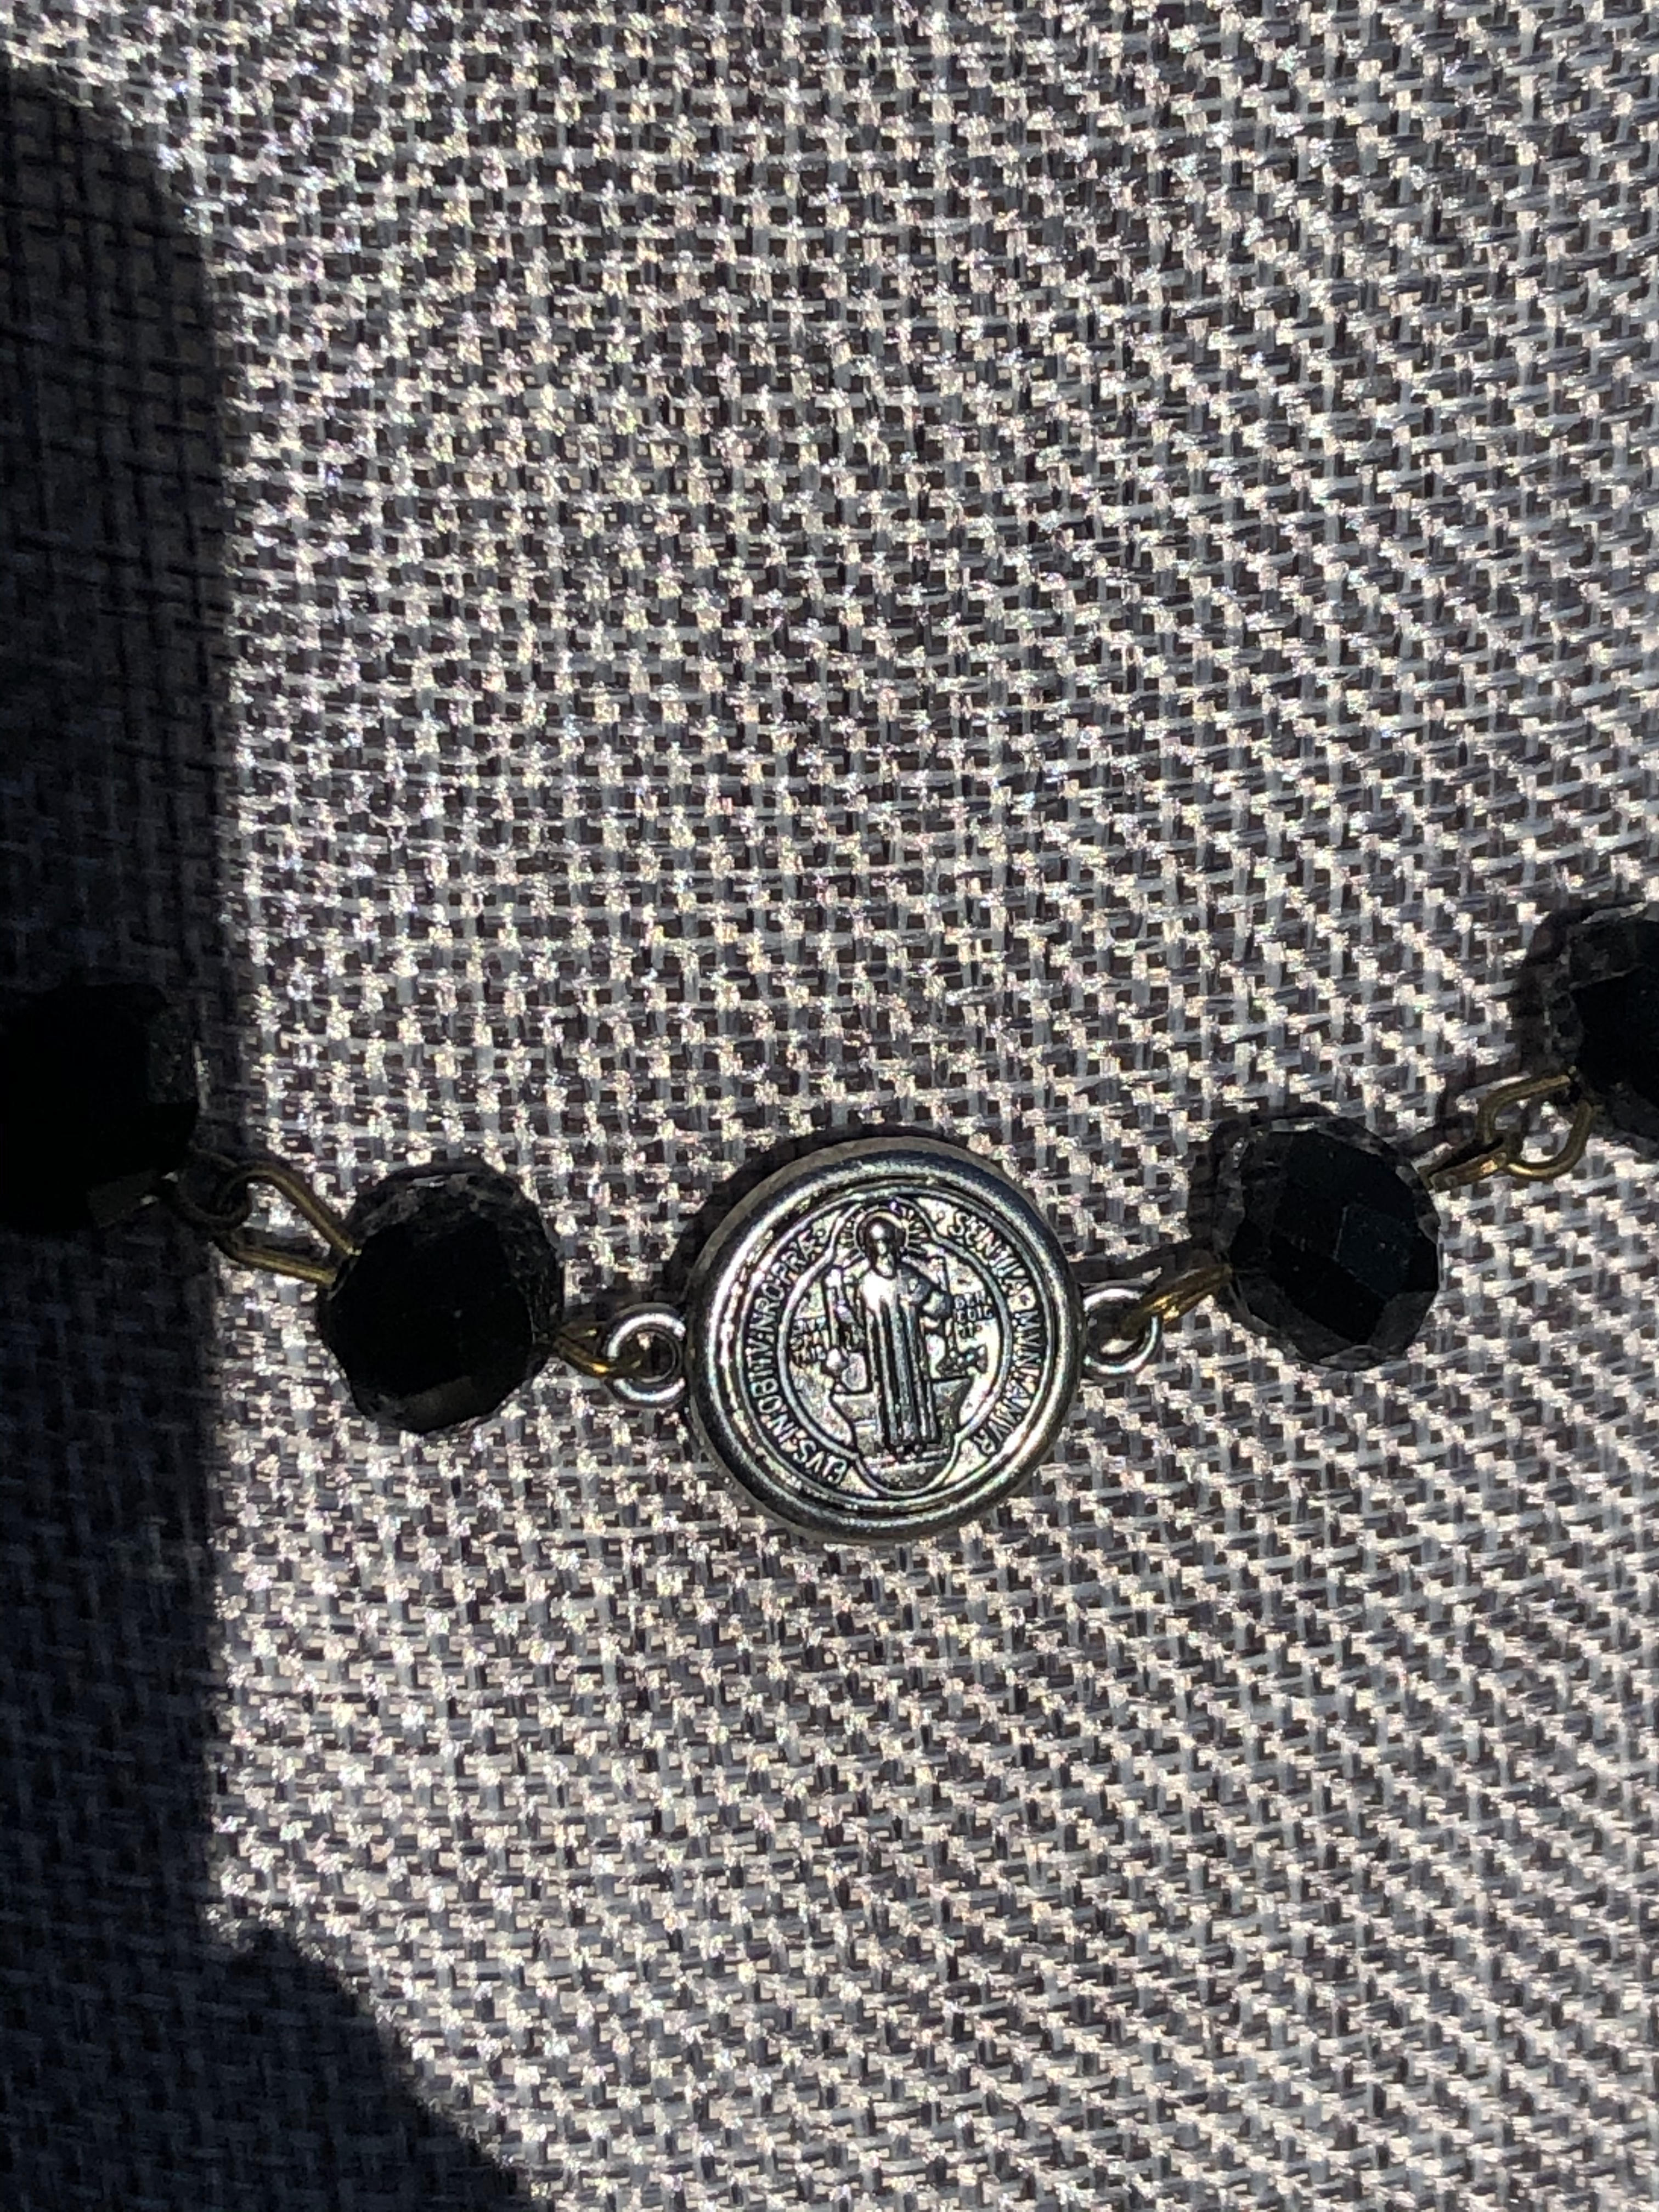 VJ11_-_St_Ben_necklace_close_up_medal.jpg